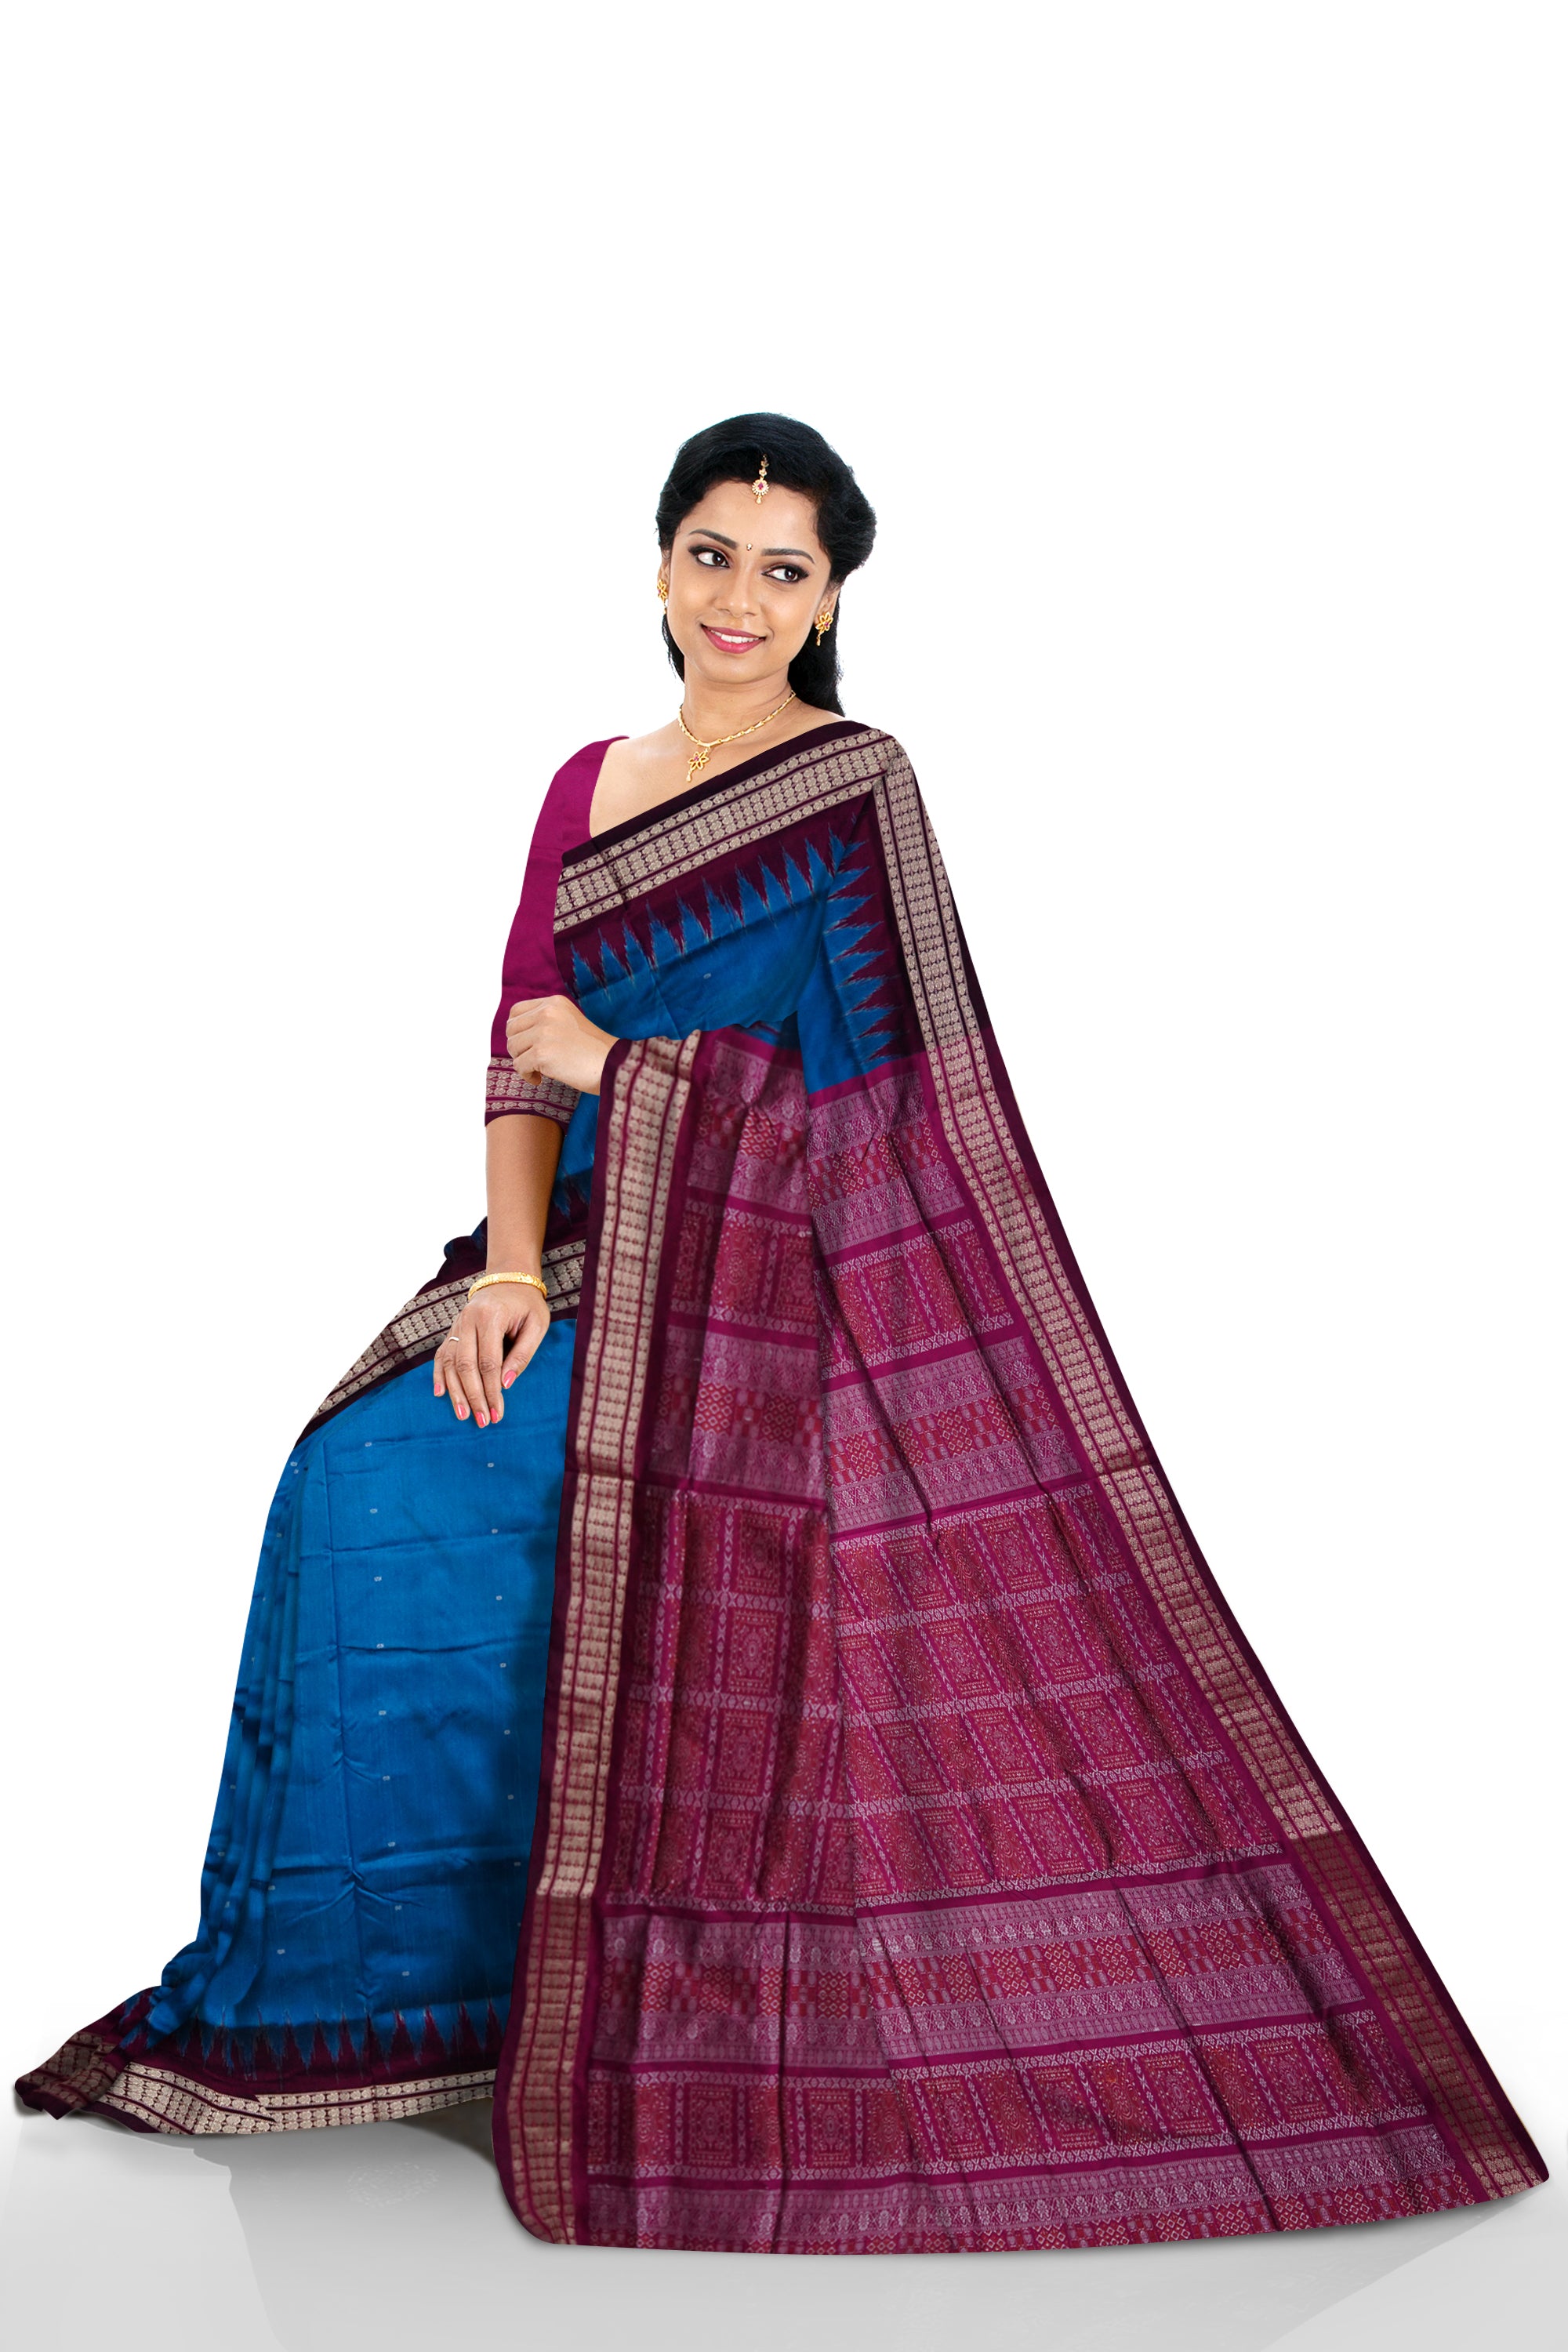 Small booty pattern body with pallu bomkei pattern Sambalpuri plain pata saree in Blue and pink color. - Koshali Arts & Crafts Enterprise